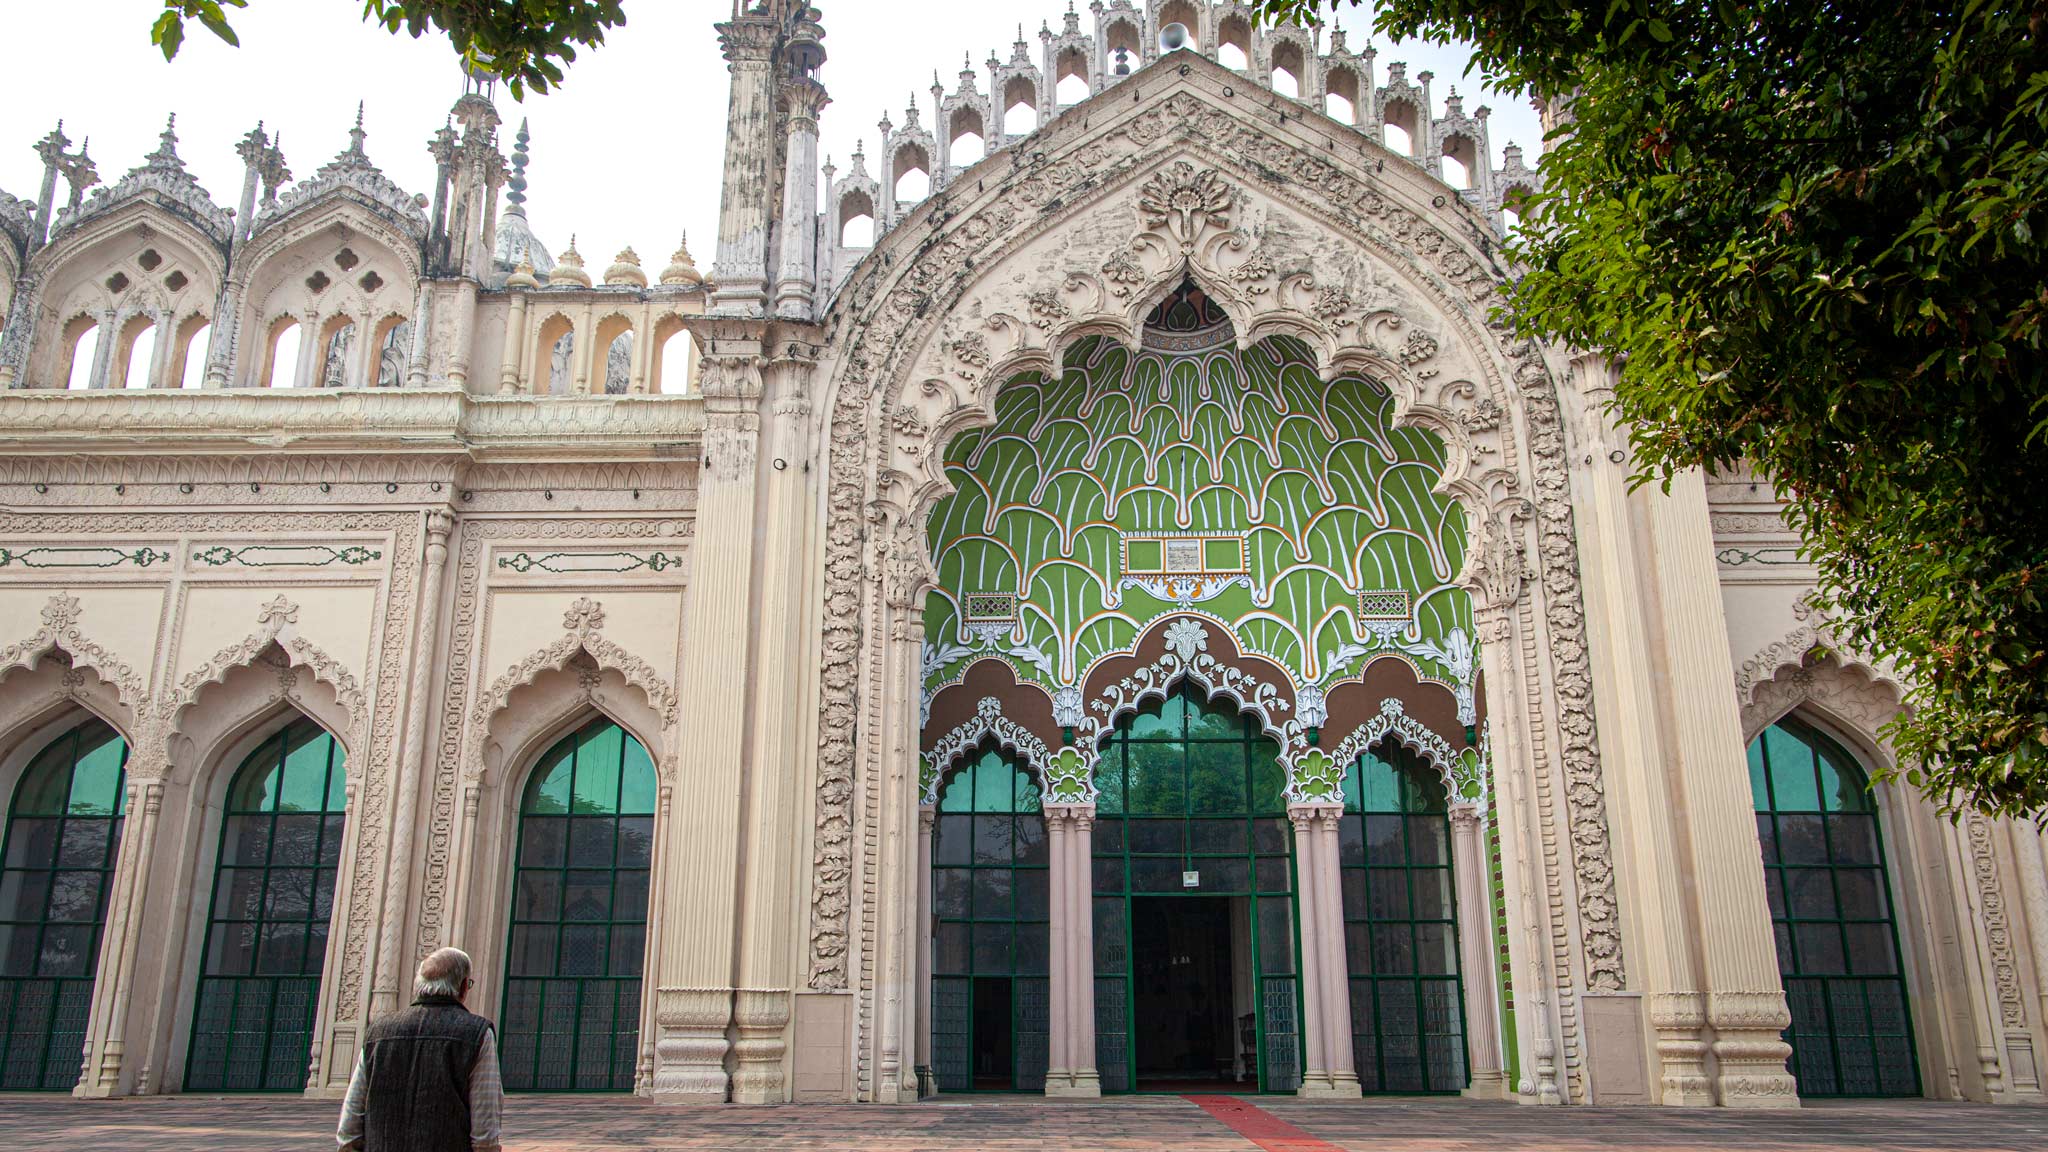 勒克瑙Jama Masjid清真寺的入口大门，一名男子站在左边祈祷，建筑上有各种彩色瓷砖的拱门